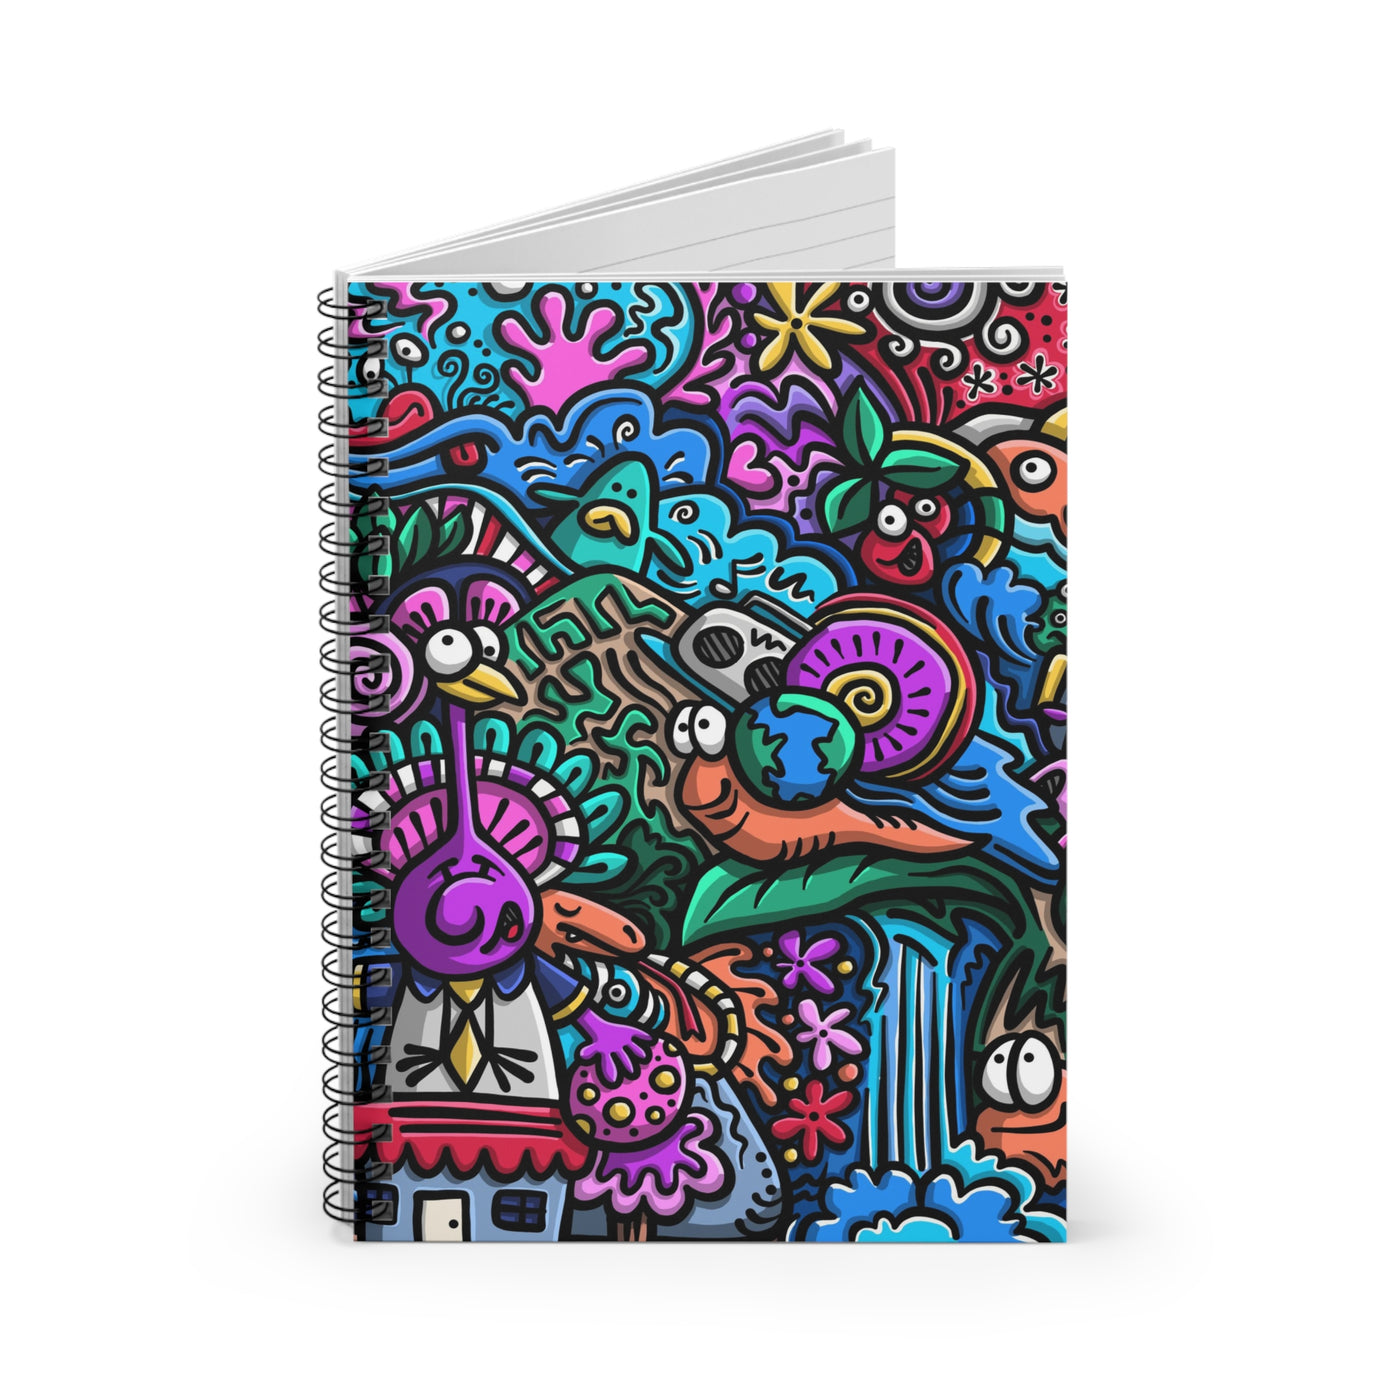 A World Of Fun Spiral Notebook